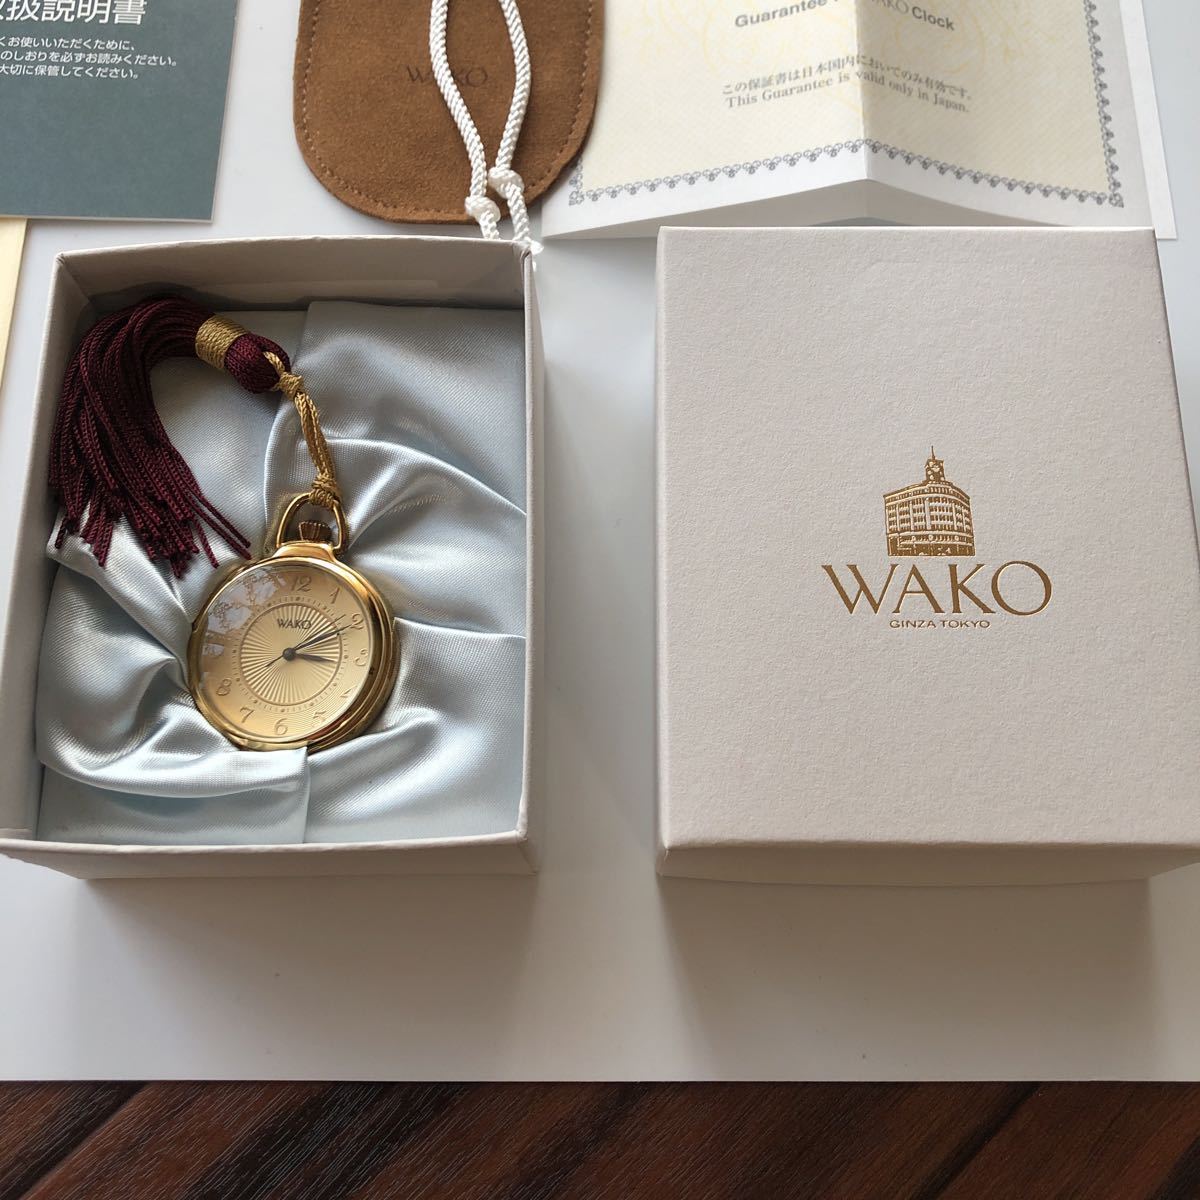 銀座 和光 WAKOクロック OB001G ルーペ付き提げ時計 付属品有り レディース ゴールド×ワインレッド クォーツ 新品 未使用品_画像4